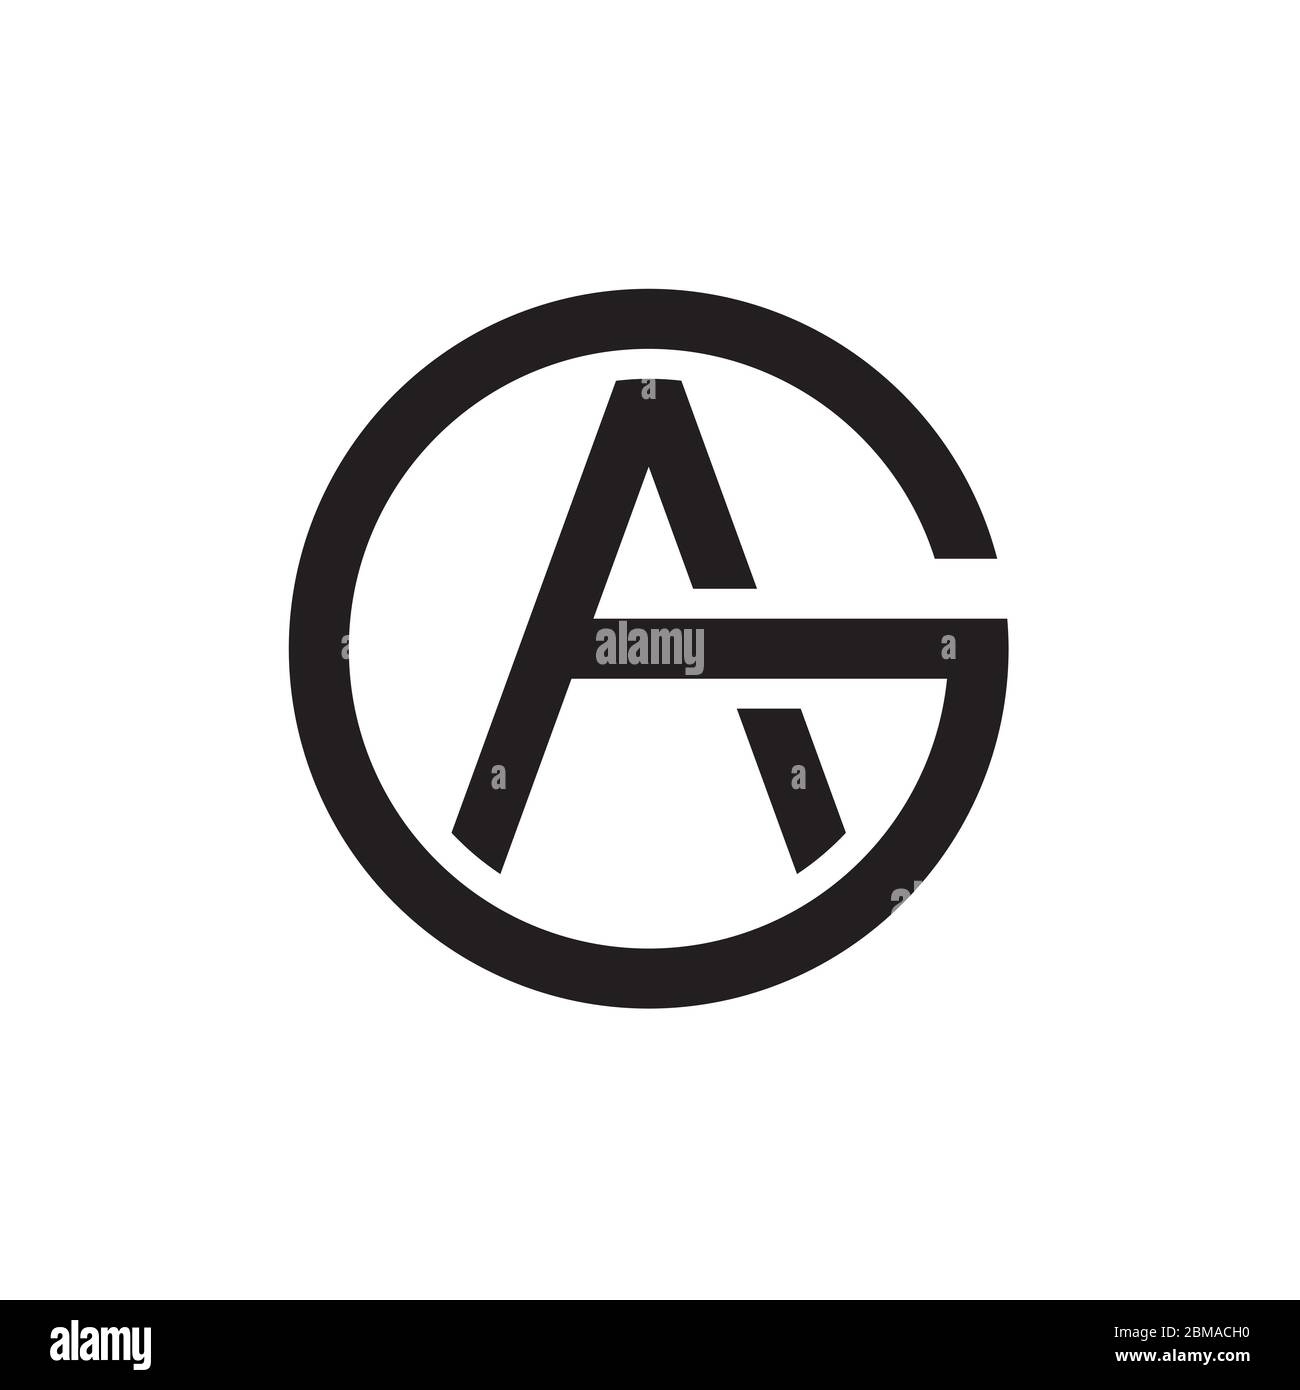 A G / G A circle letter logo design vector Stock Vector